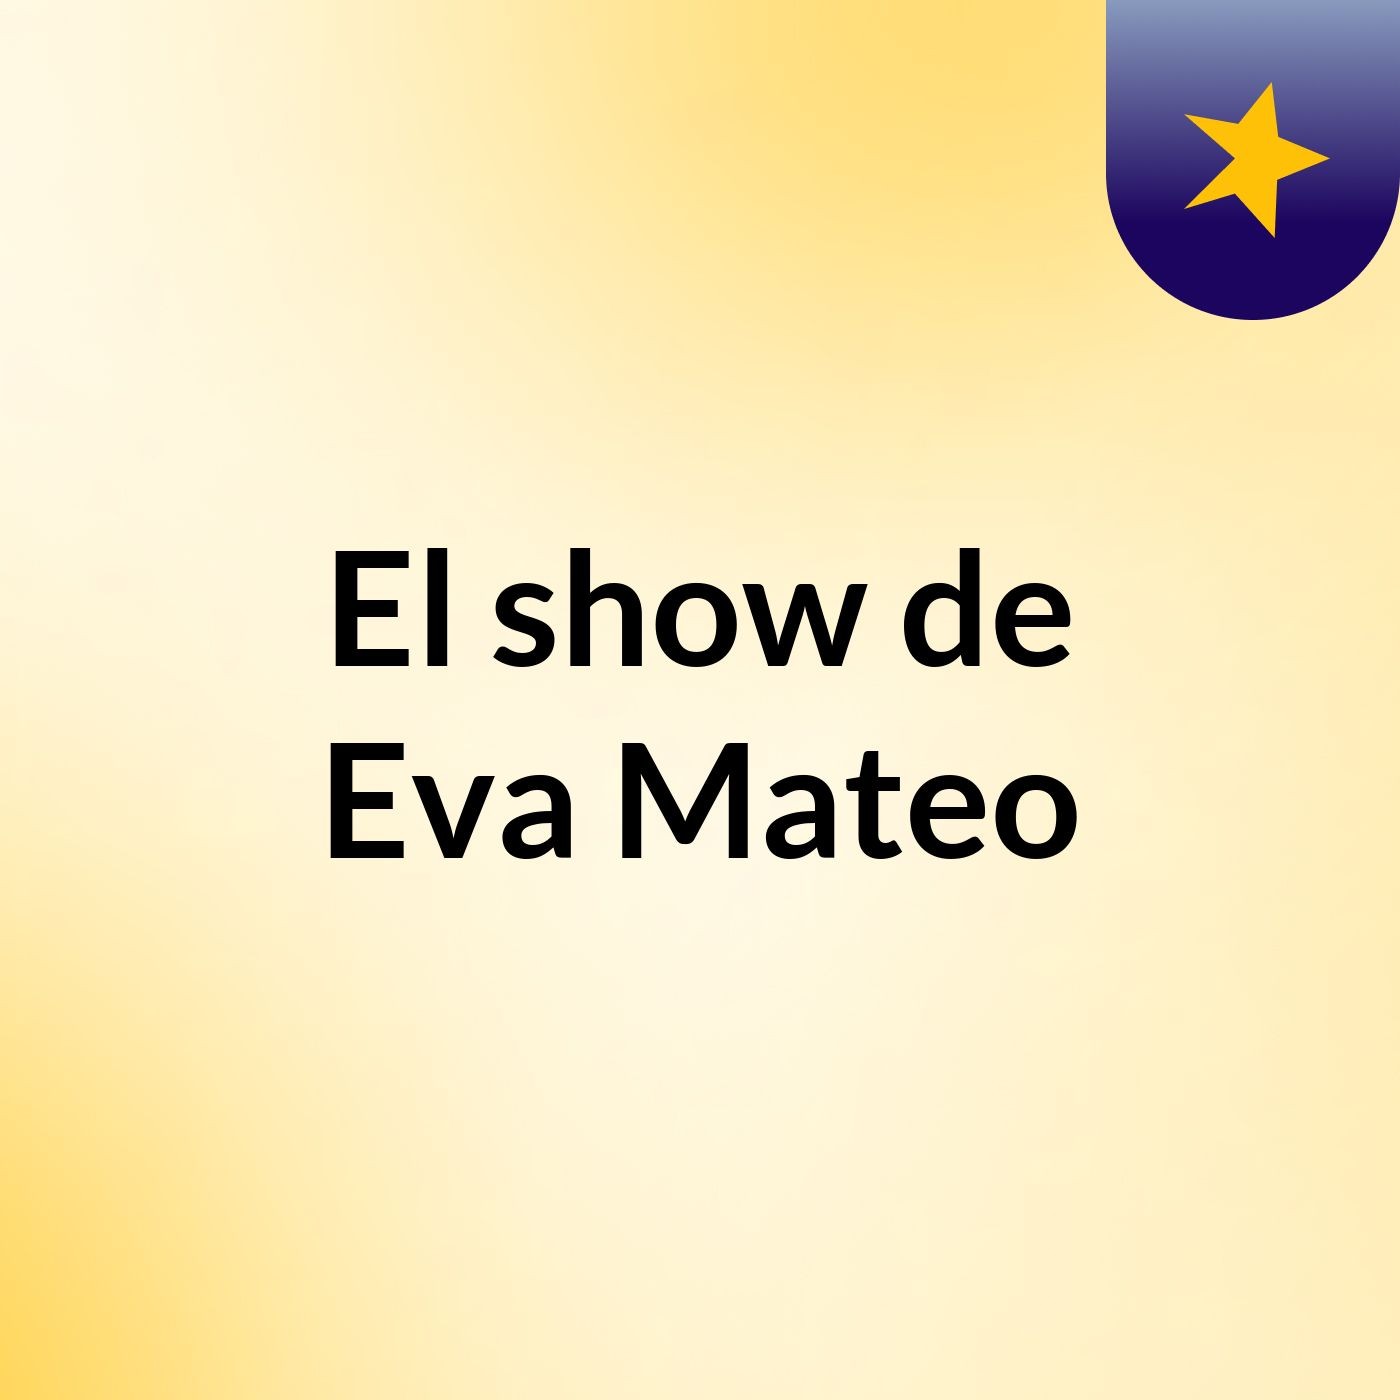 El show de Eva Mateo